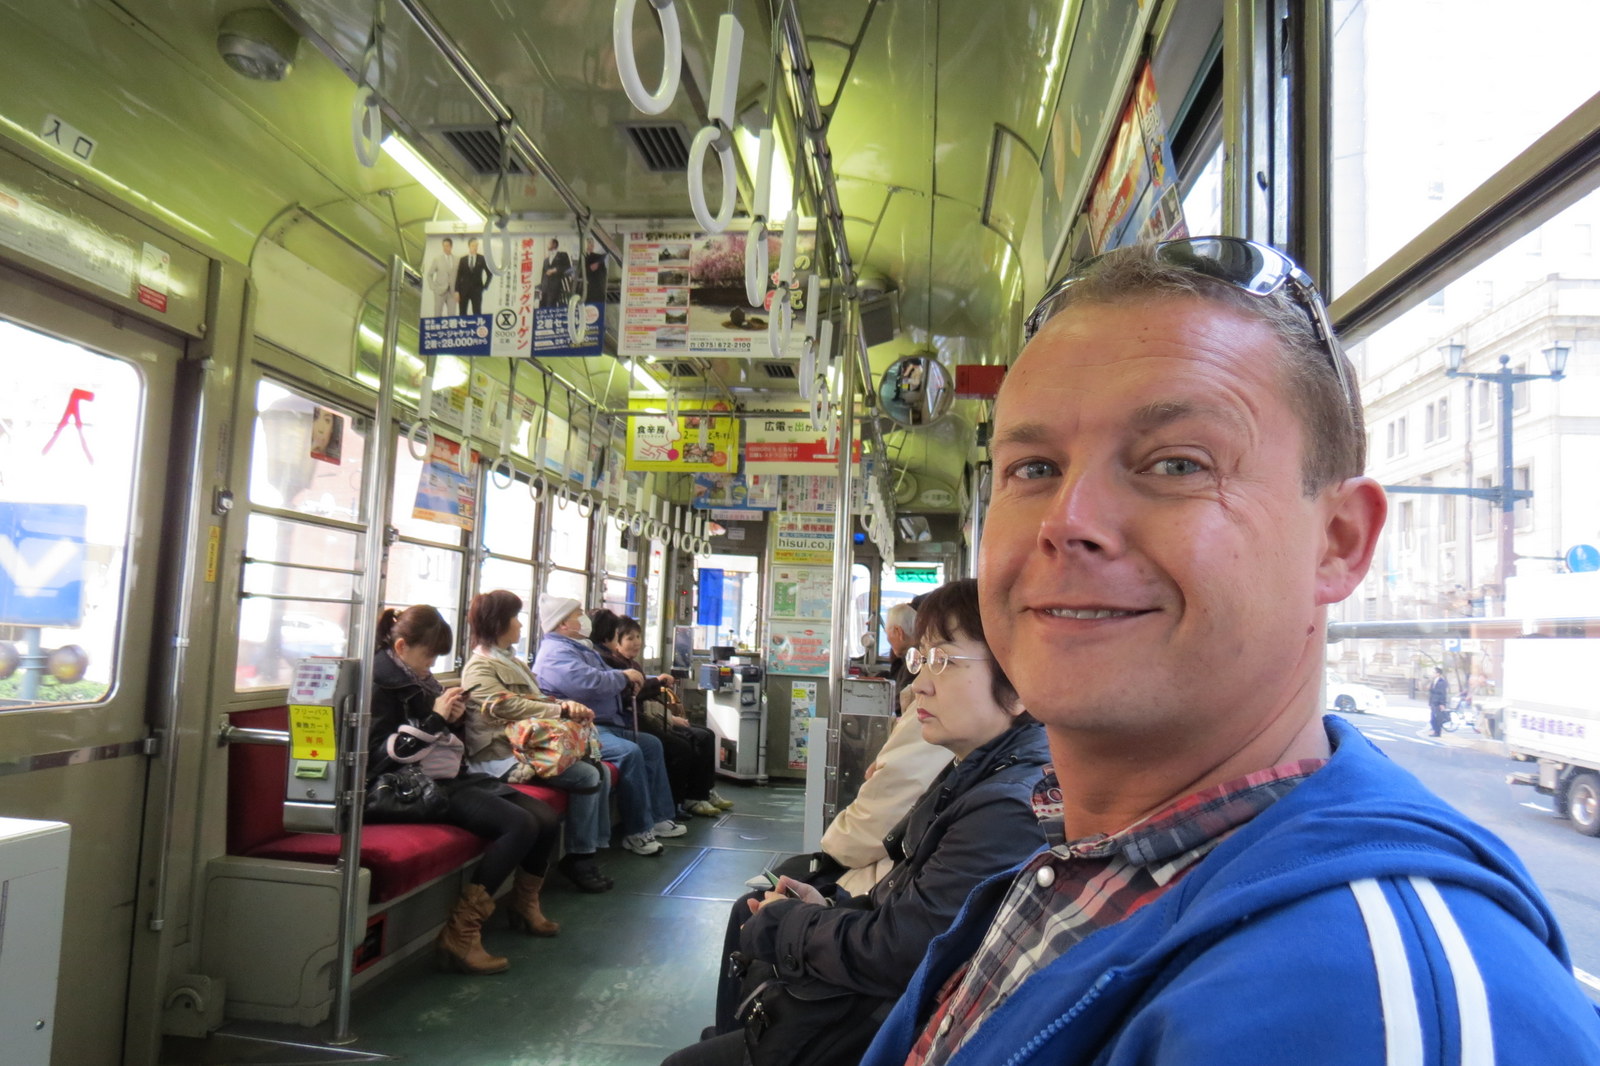 John Hiroshima Tram street car